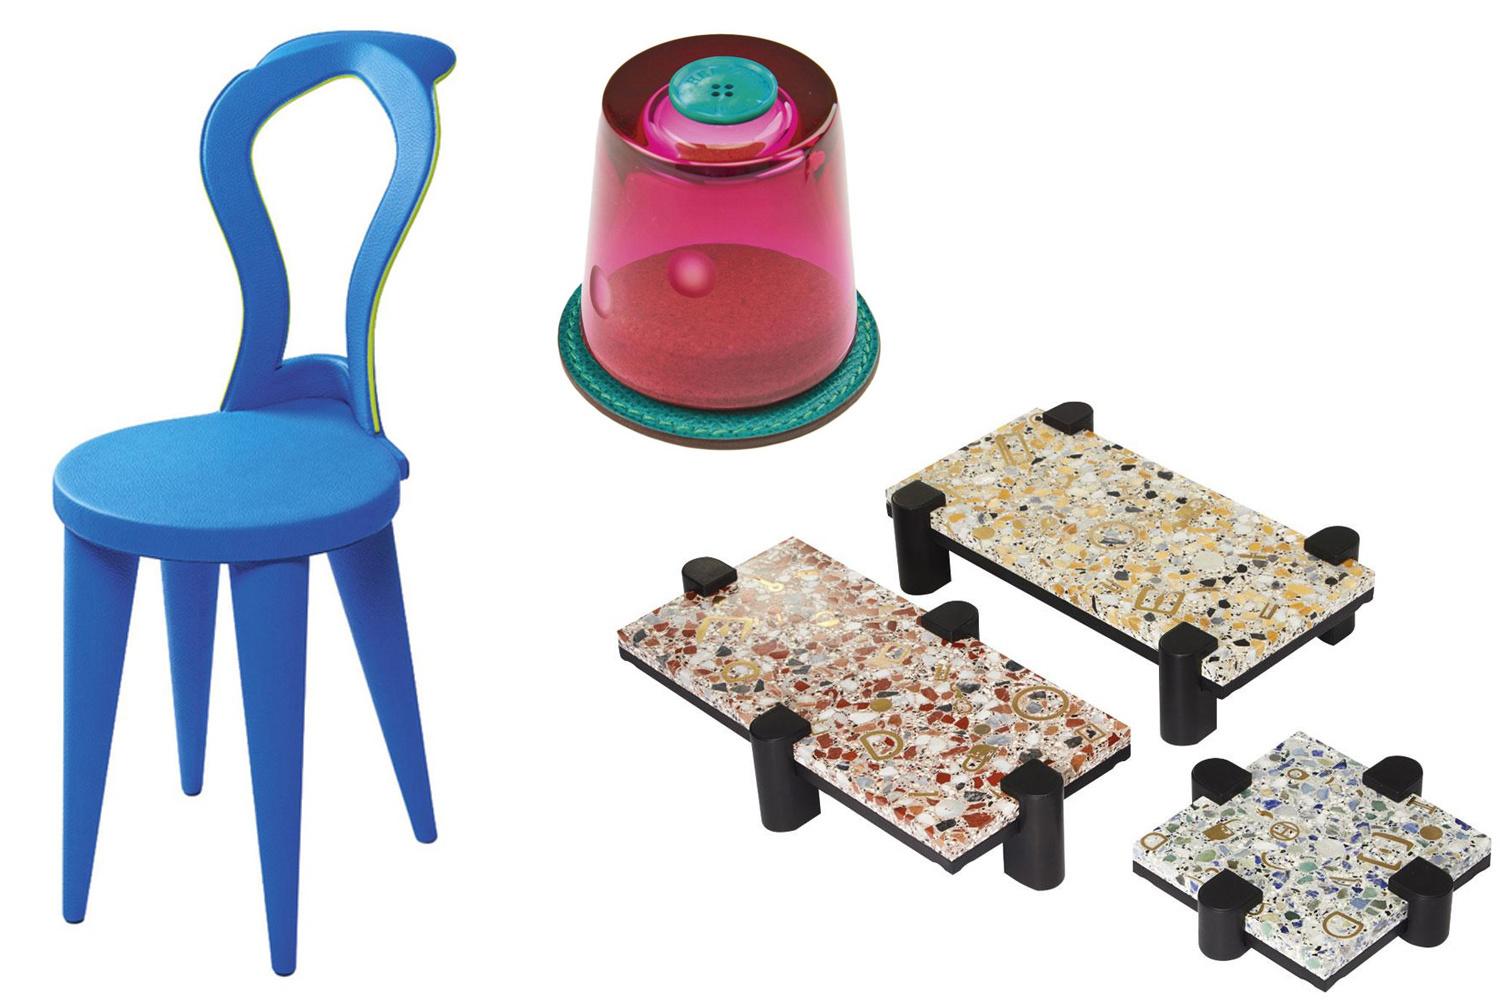 Une chaise habillée de cuir utilisé pour la sellerie / Une salière faite avec des rebuts de cuir et un bouton en nacre / Des tables en terrazzo, à pieds amovibles